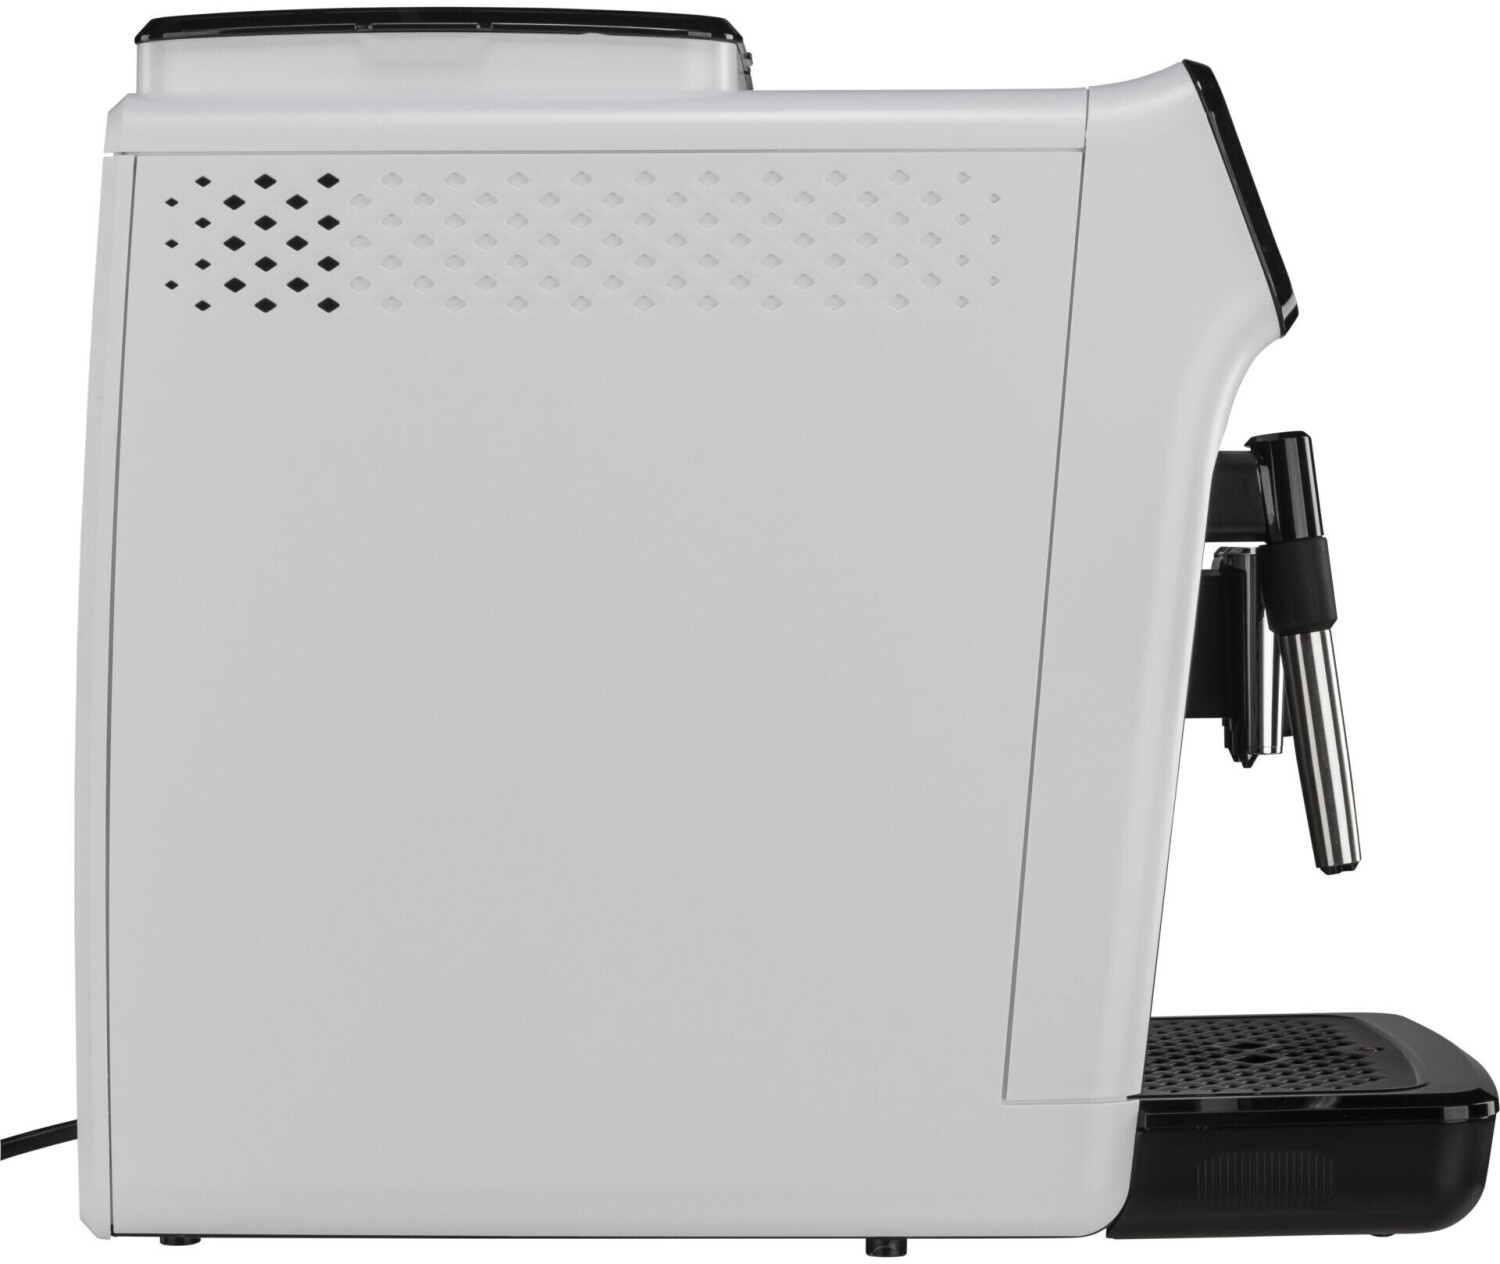 Machine à café Expresso avec broyeur, 1200 série, blanc et gris EP1223/00,  Philips